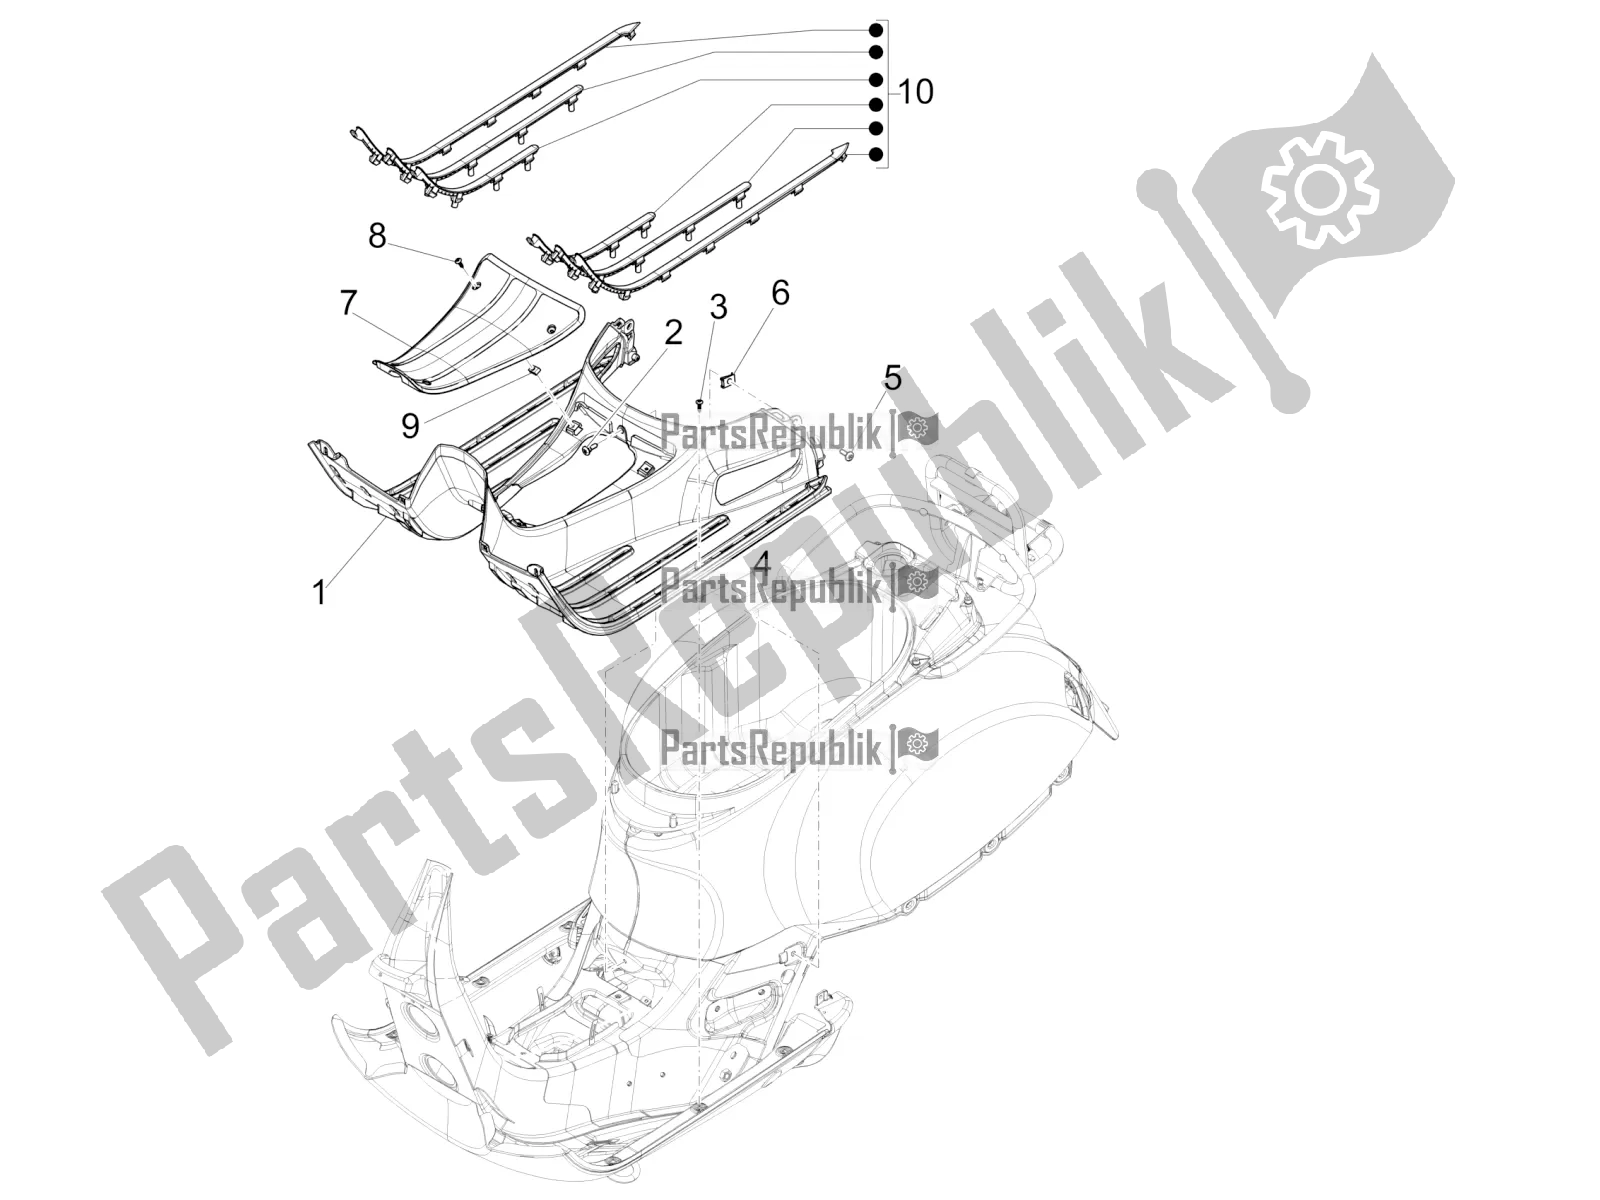 Toutes les pièces pour le Housse Centrale - Repose-pieds du Vespa GTS 125 Super ABS Iget Apac 2020